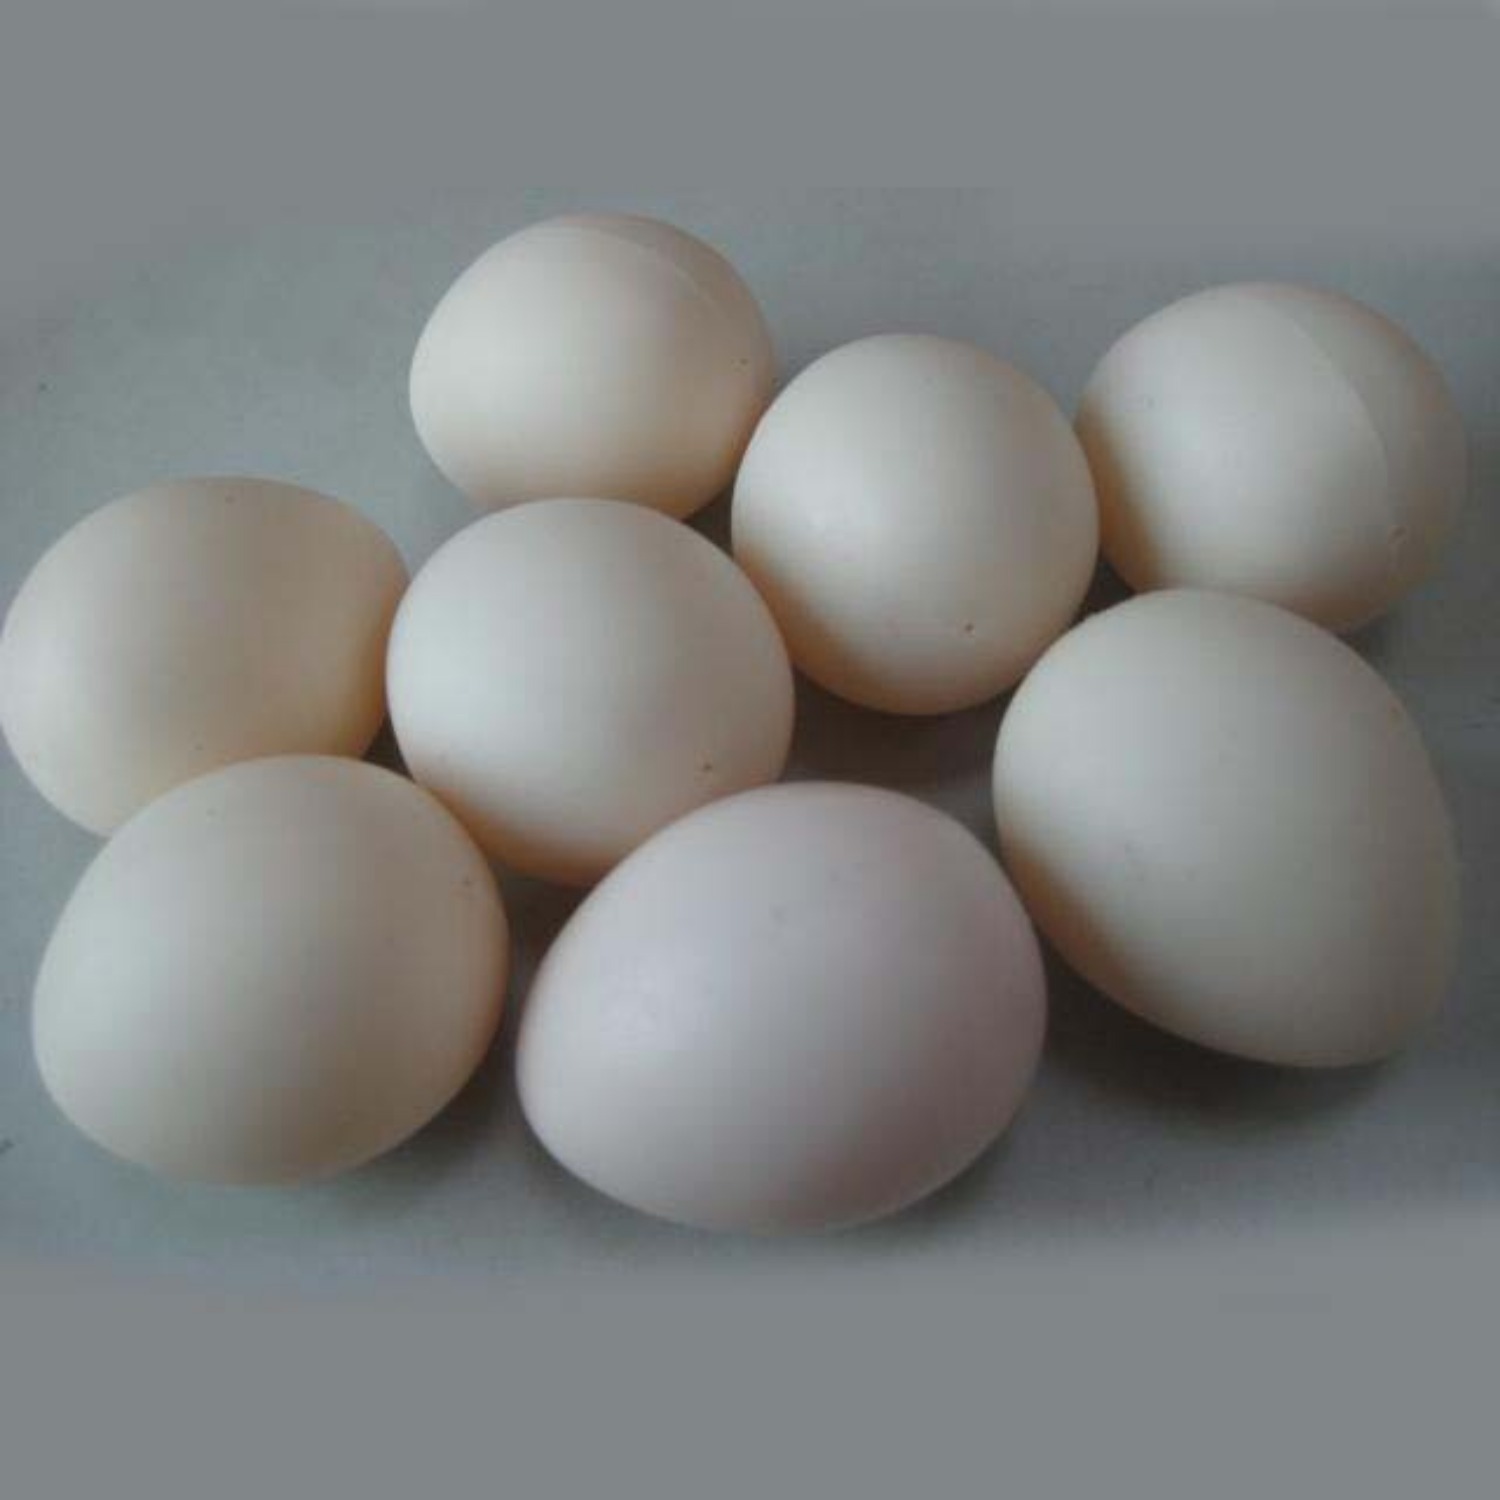 [리얼계란]Super Plastic Egg (White, Hollow) 각종마술에 사용되는 진짜같은 가짜계란입니다.